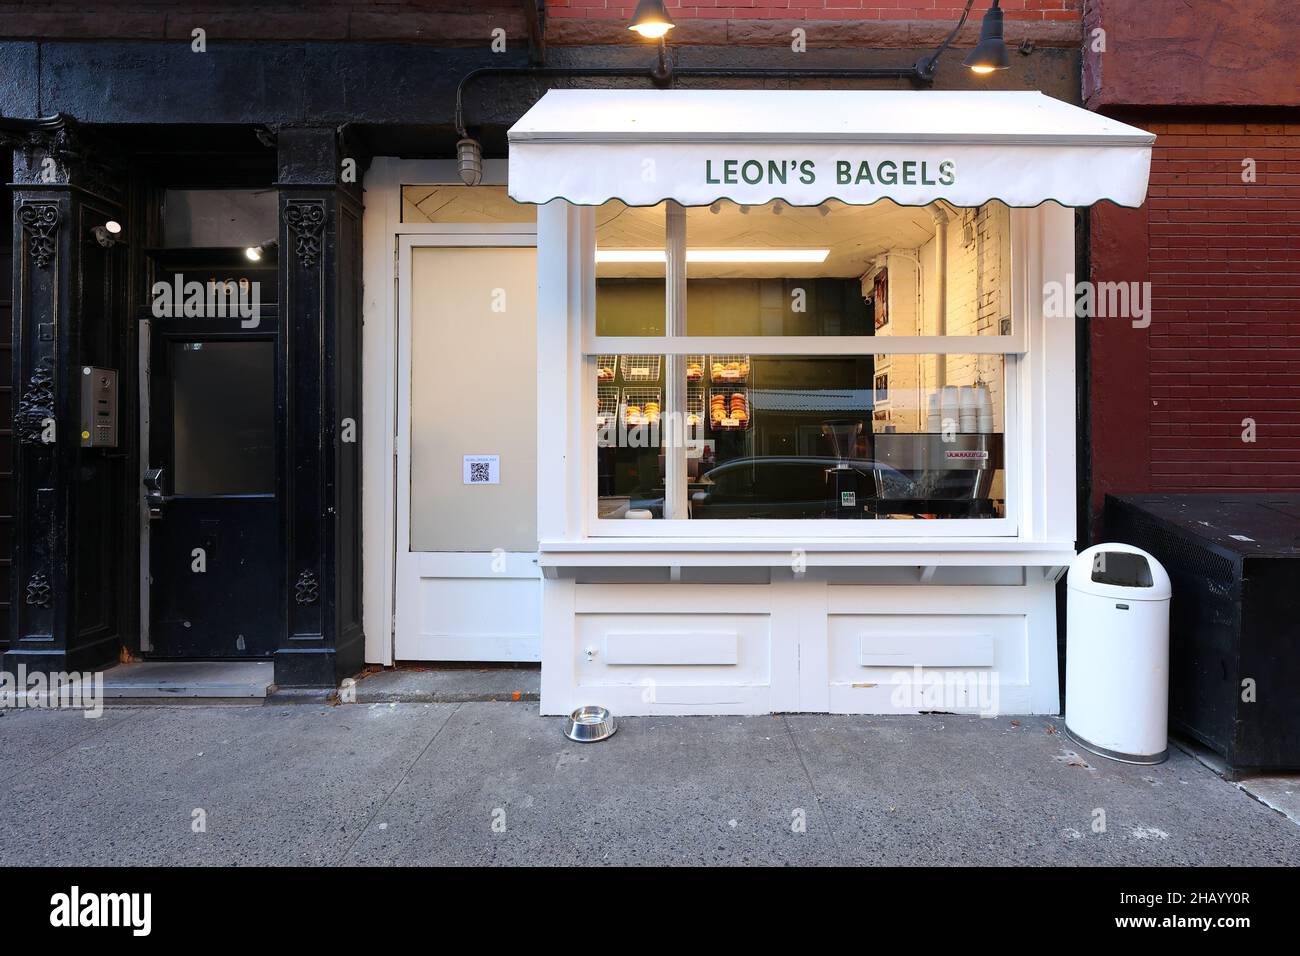 Leon's Bagels, 169 Thompson St, New York, NYC Foto von einem Bagel-Laden im Stadtteil Greenwich Village. Stockfoto